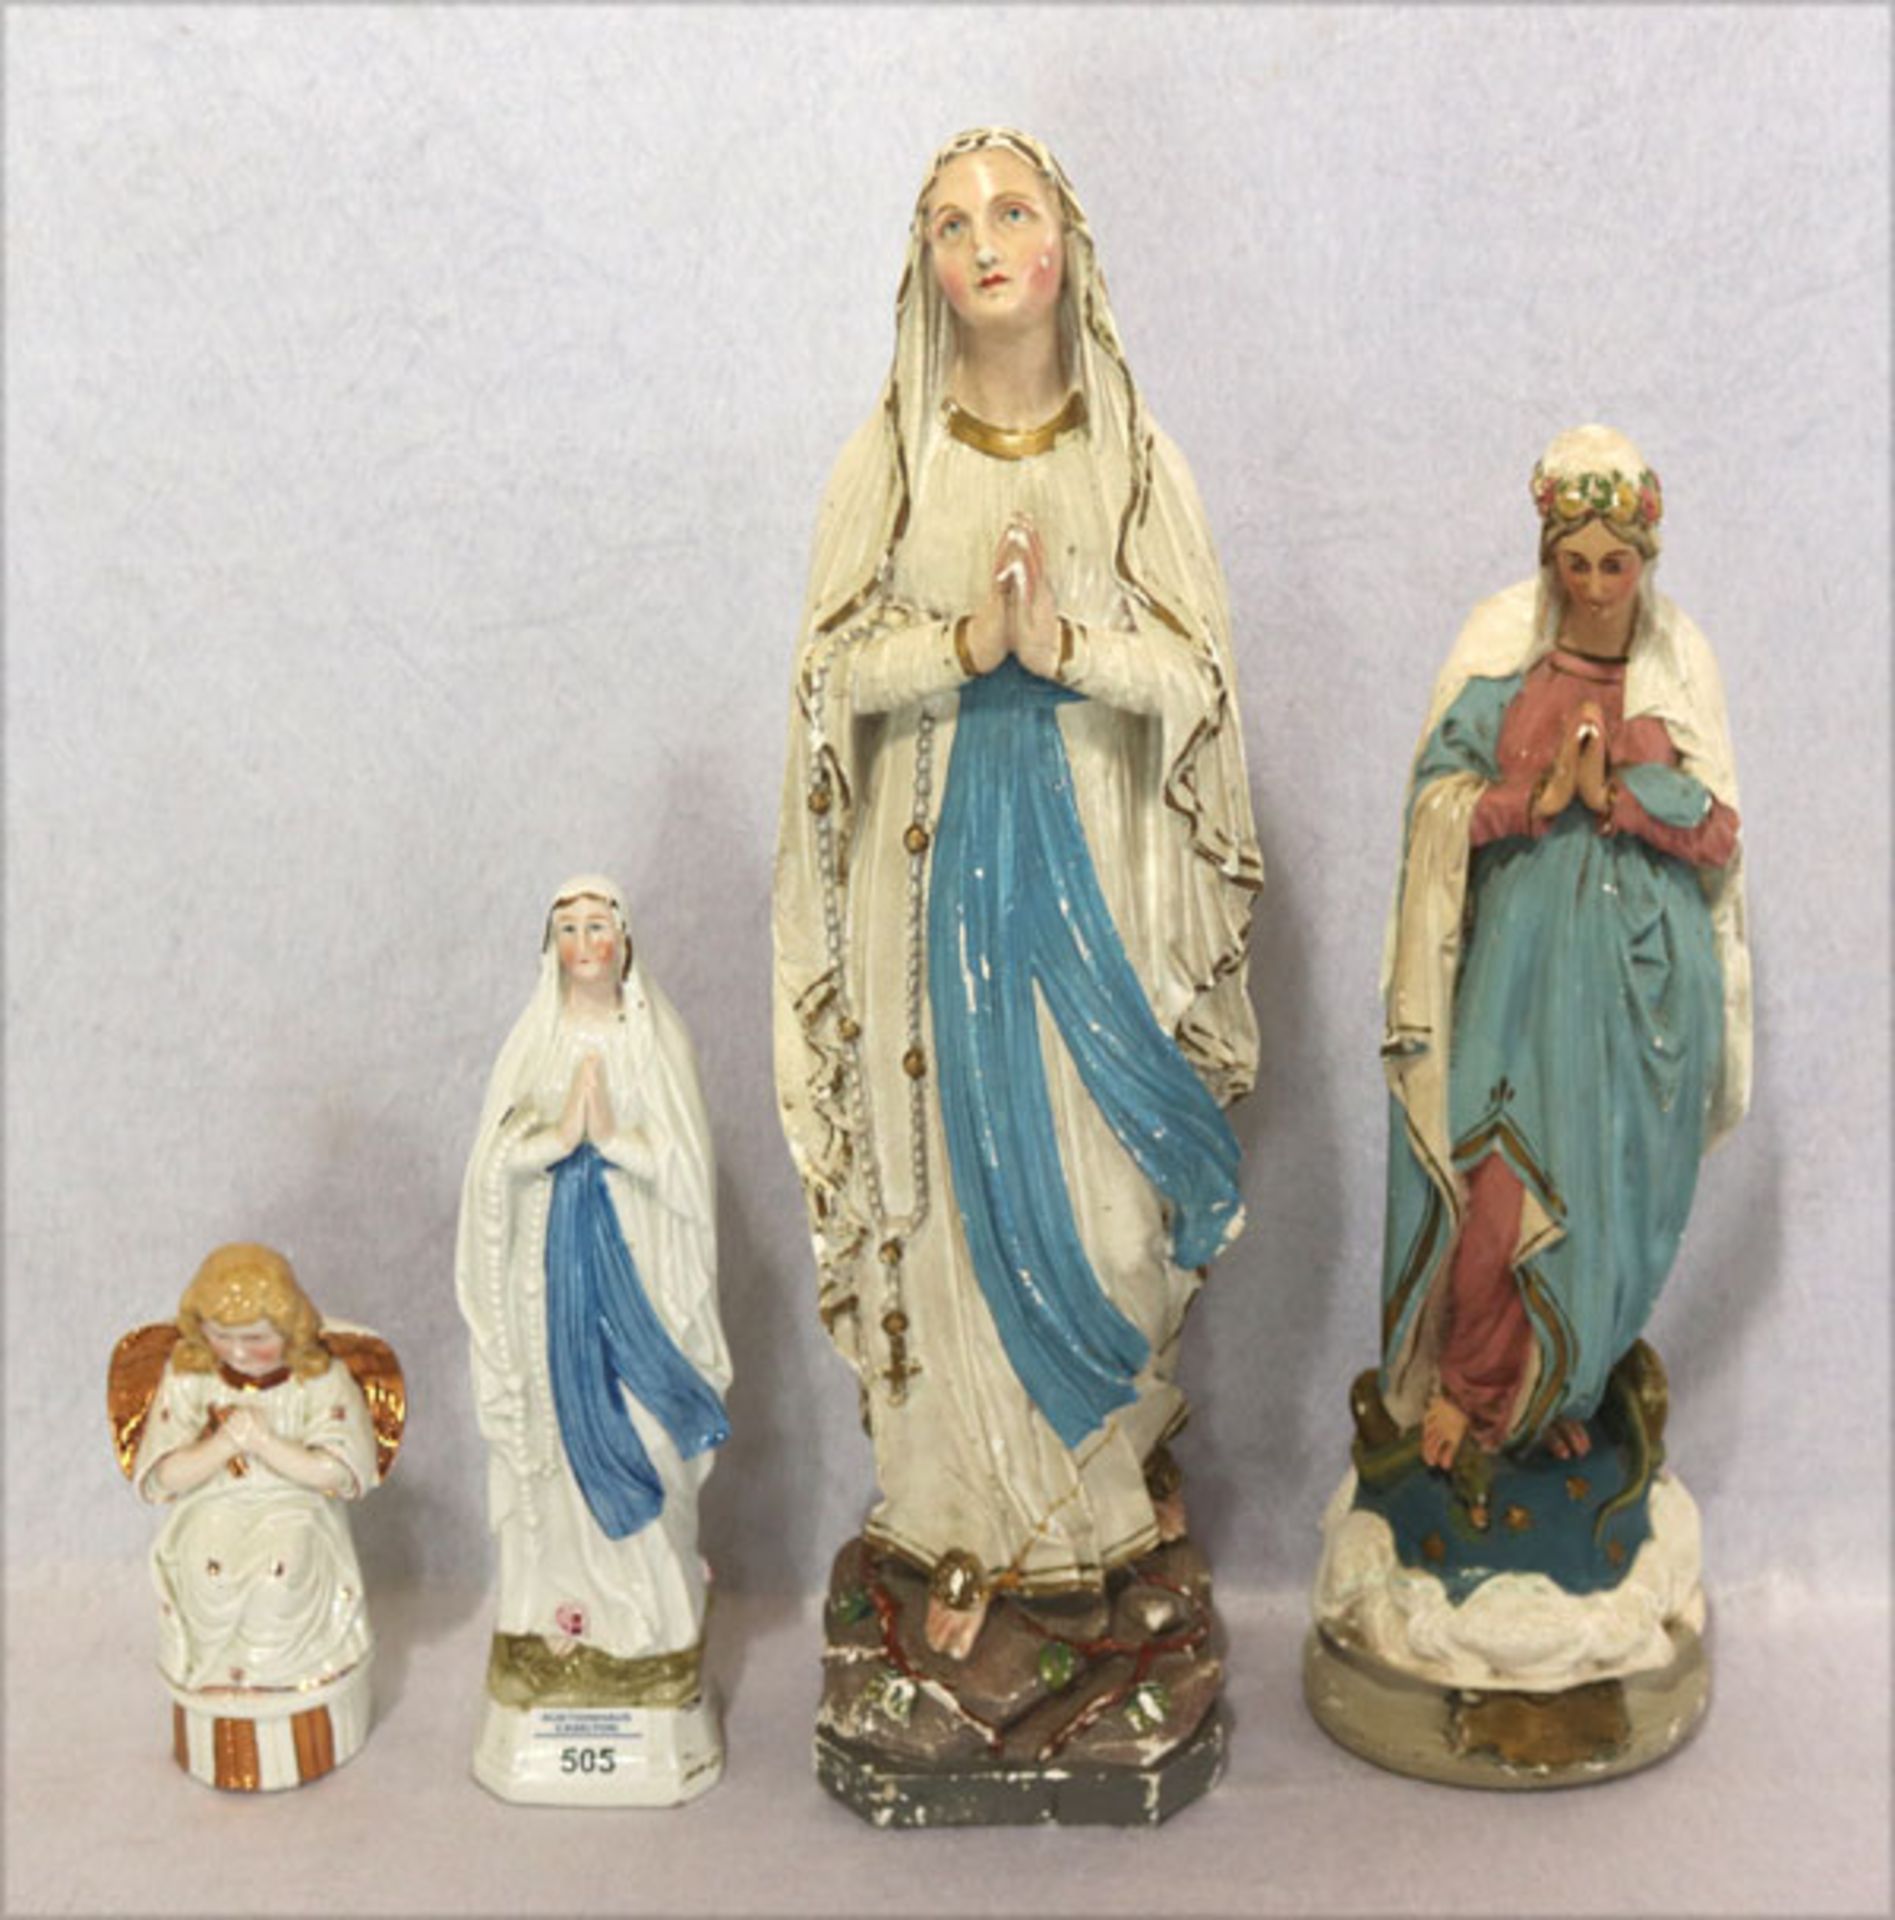 Konvolut von 4 religiösen Figuren, Keramik und Gips, Madonnen und Schutzenge, teils bemalt/glasiert,